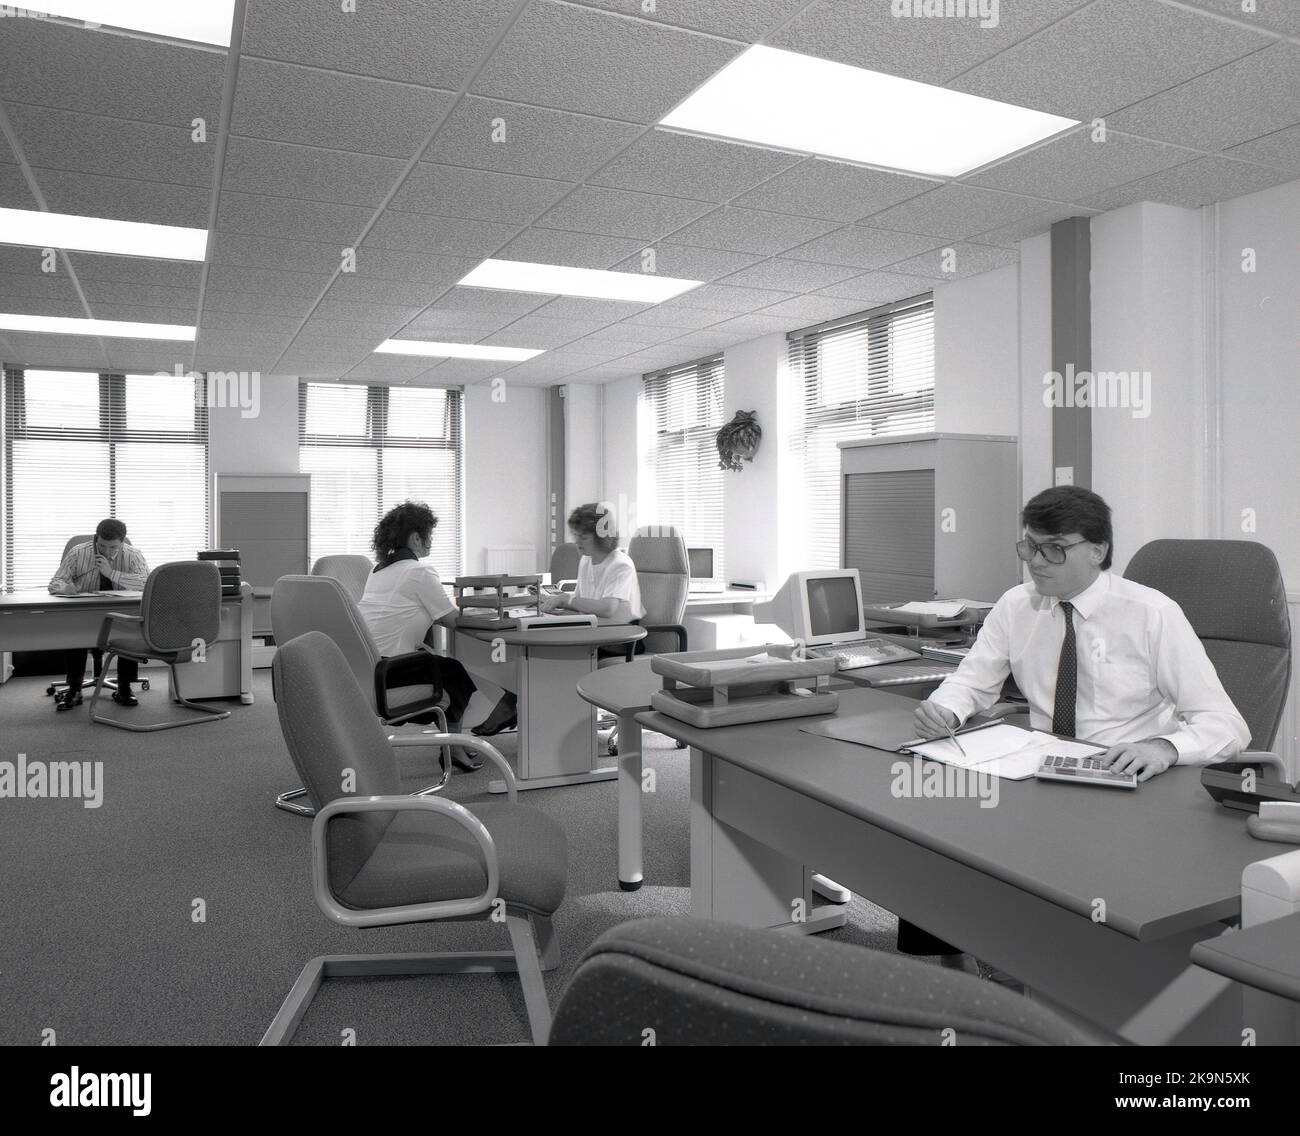 1989, dipendenti storici, di sesso maschile e femminile che lavorano alle loro scrivanie in un ufficio a pianta aperta, Inghilterra, Regno Unito. Nella foto si possono vedere i personal computer dell'epoca Foto Stock